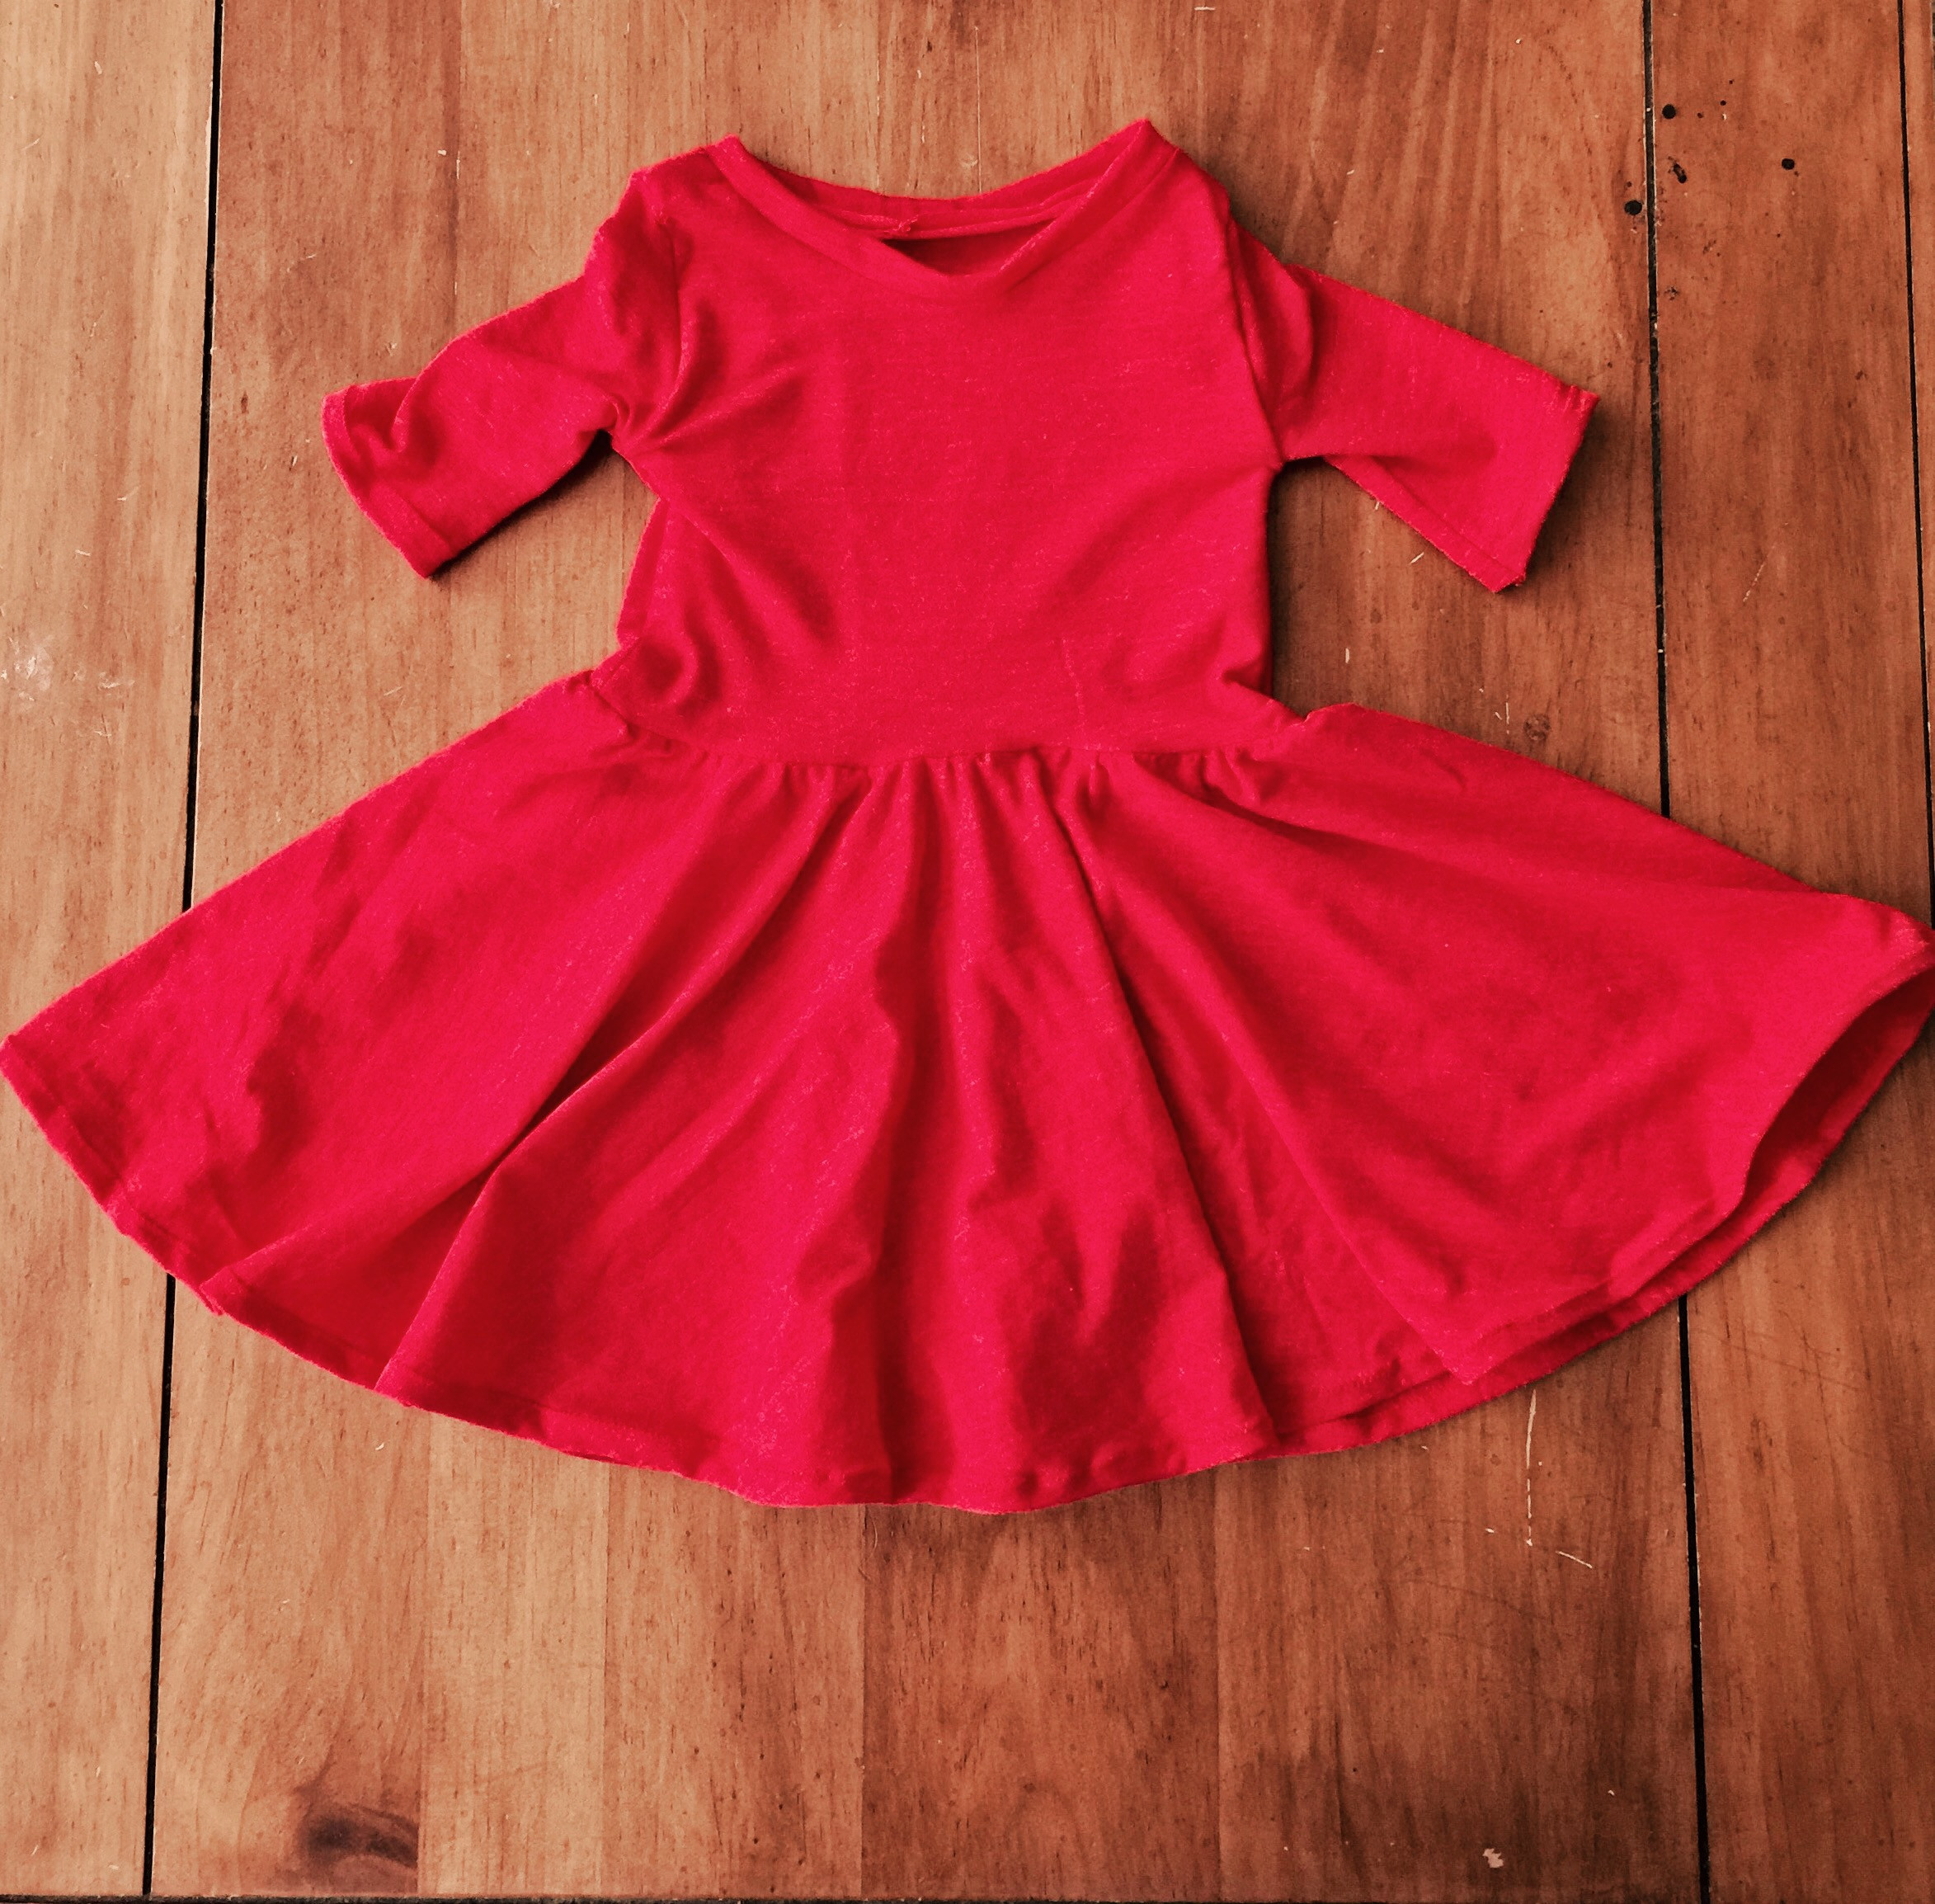 DIY Toddler Dress
 DIY Toddler Dress